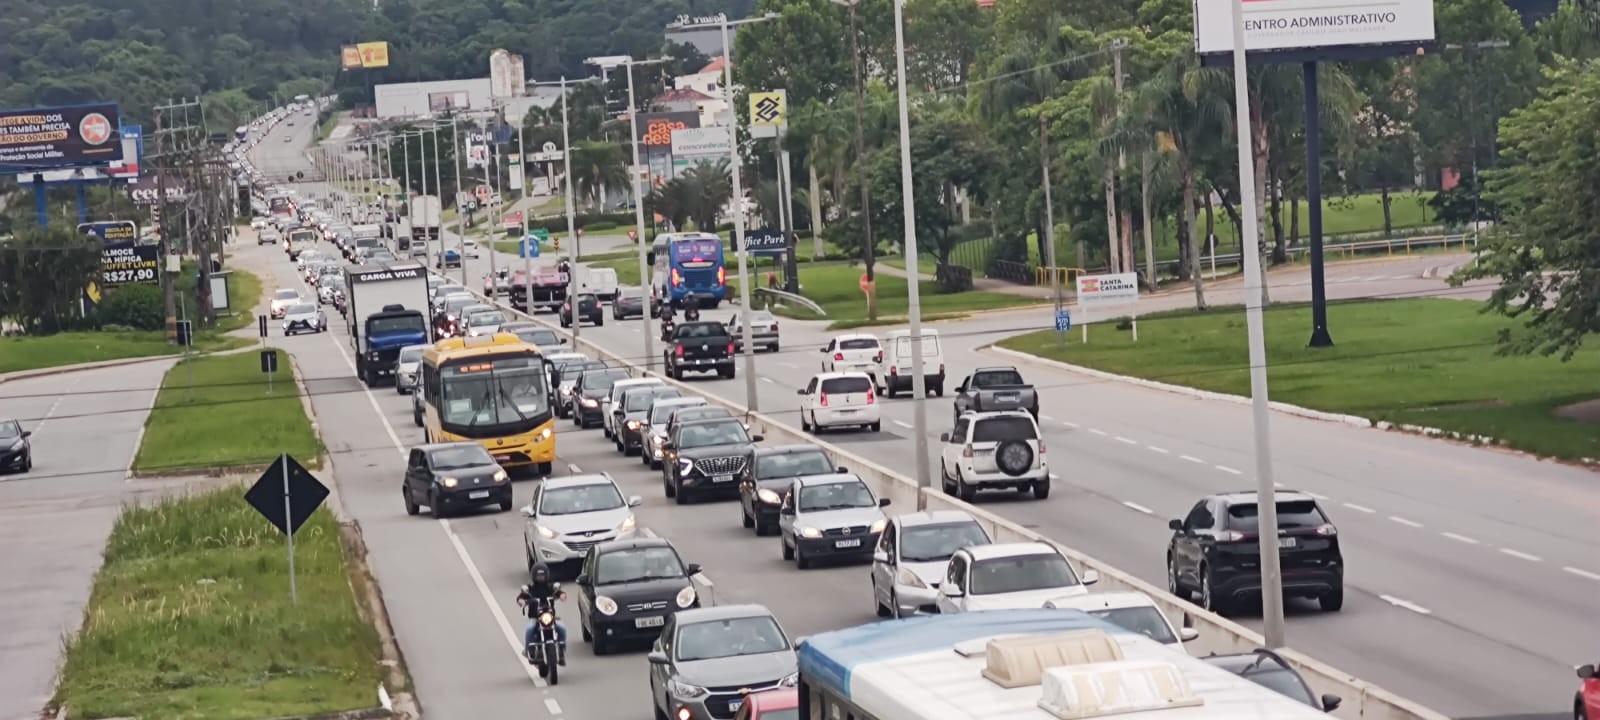 Rodovia estadual com maior média de tráfego de SC terá obra de aumento de capacidade; veja vídeo do projeto